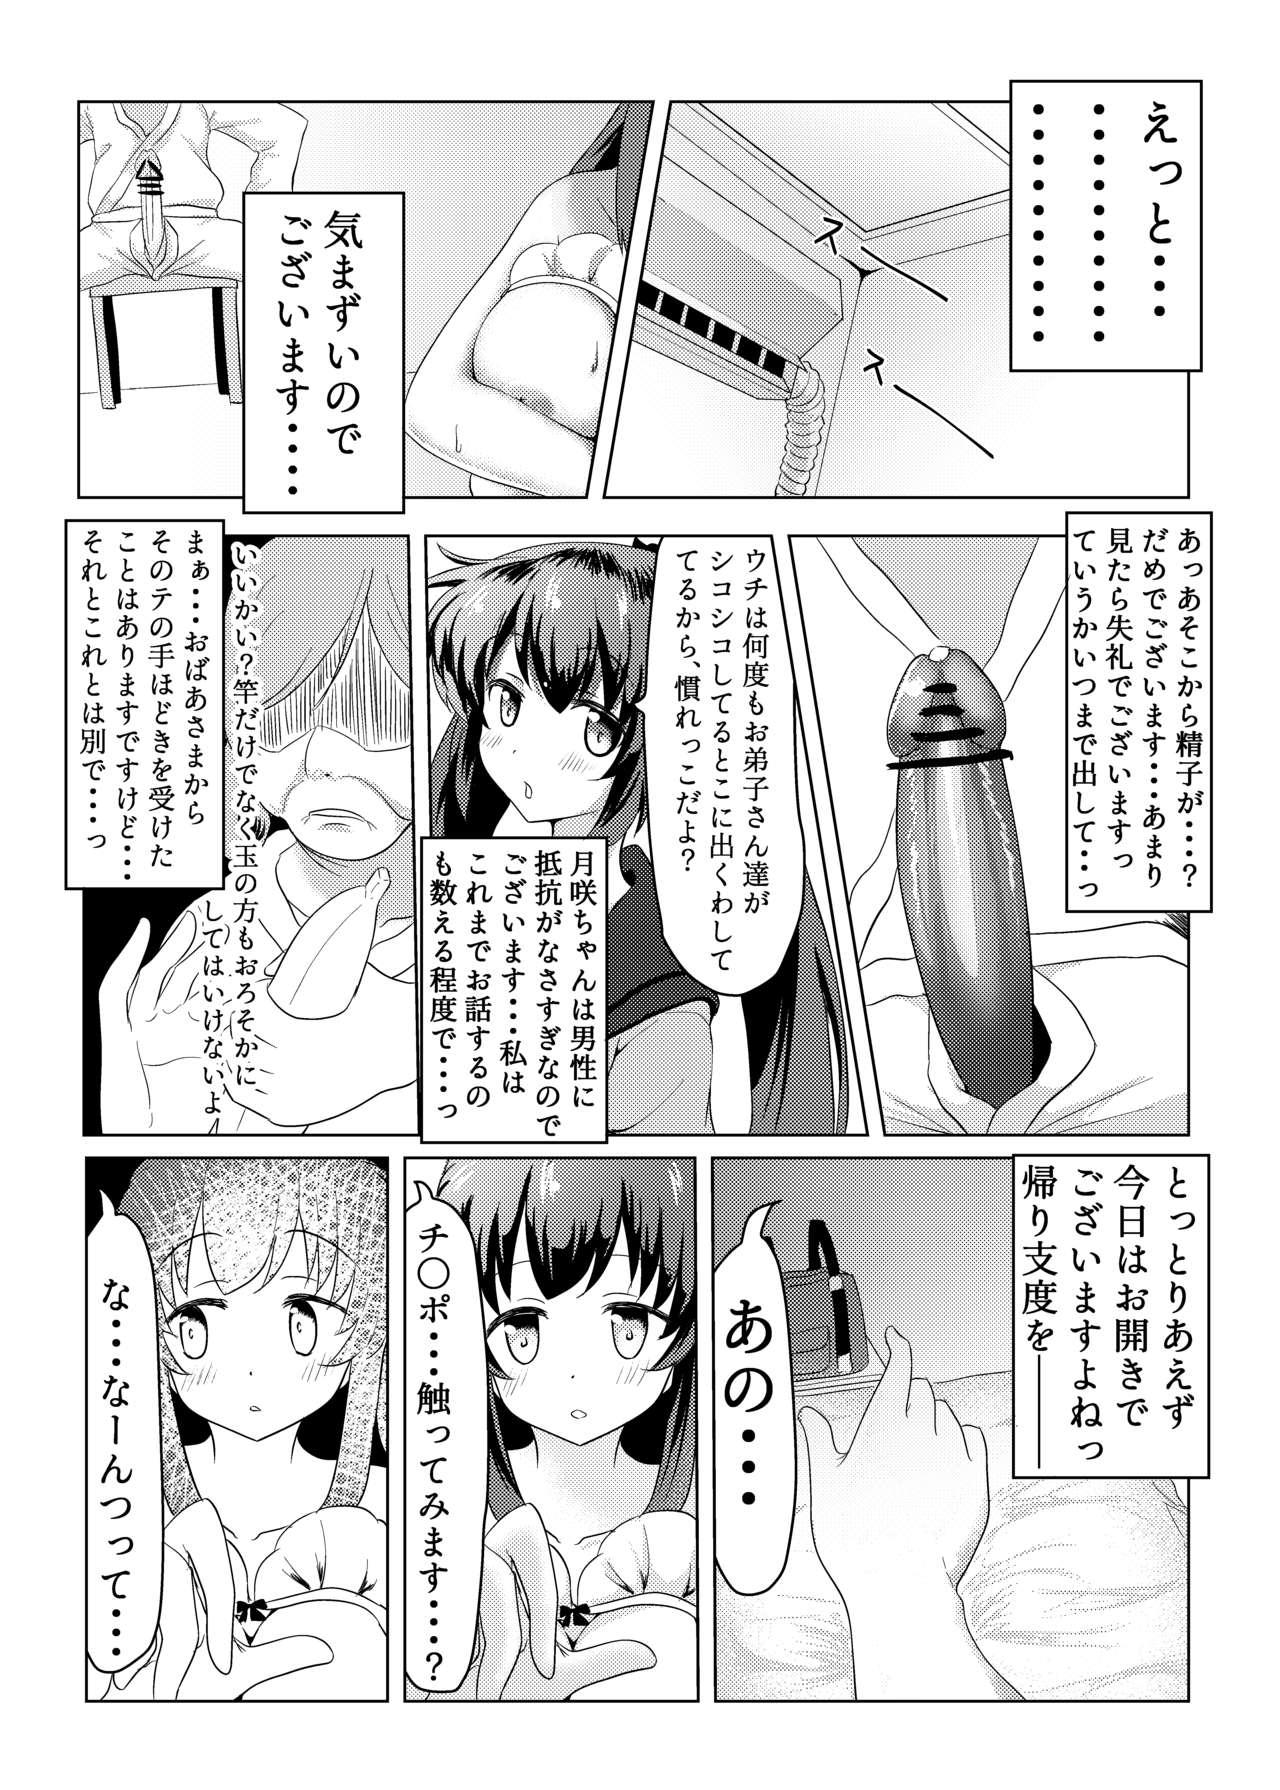 Tit Tsukuyo ga Waruinodegozaimasu - Puella magi madoka magica side story magia record Bisexual - Page 8